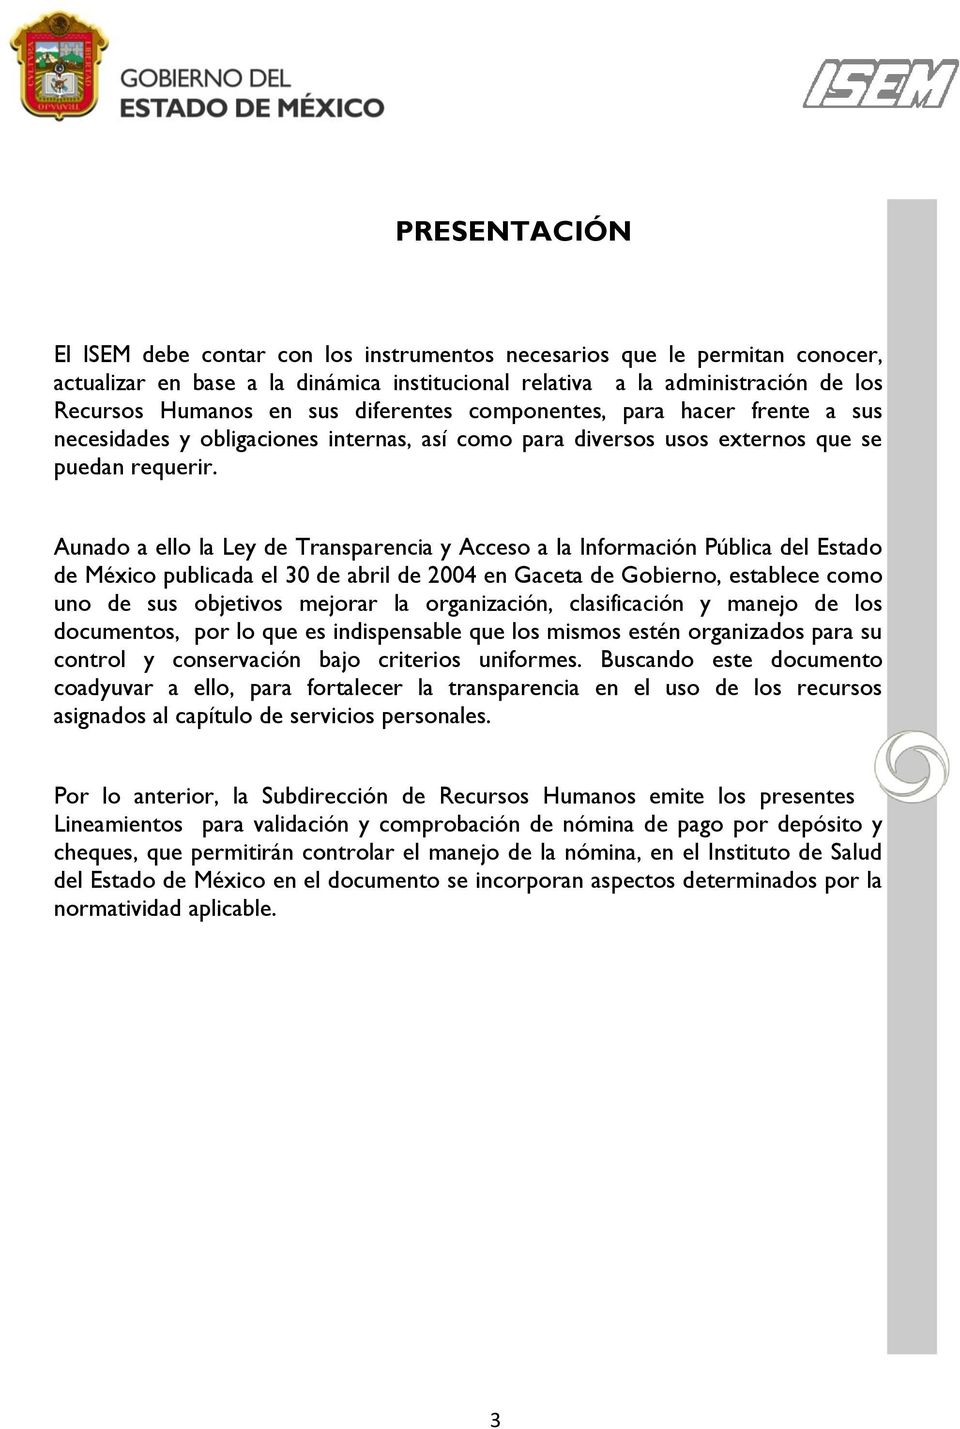 Aunado a ello la Ley de Transparencia y Acceso a la Información Pública del Estado de México publicada el 30 de abril de 2004 en Gaceta de Gobierno, establece como uno de sus objetivos mejorar la